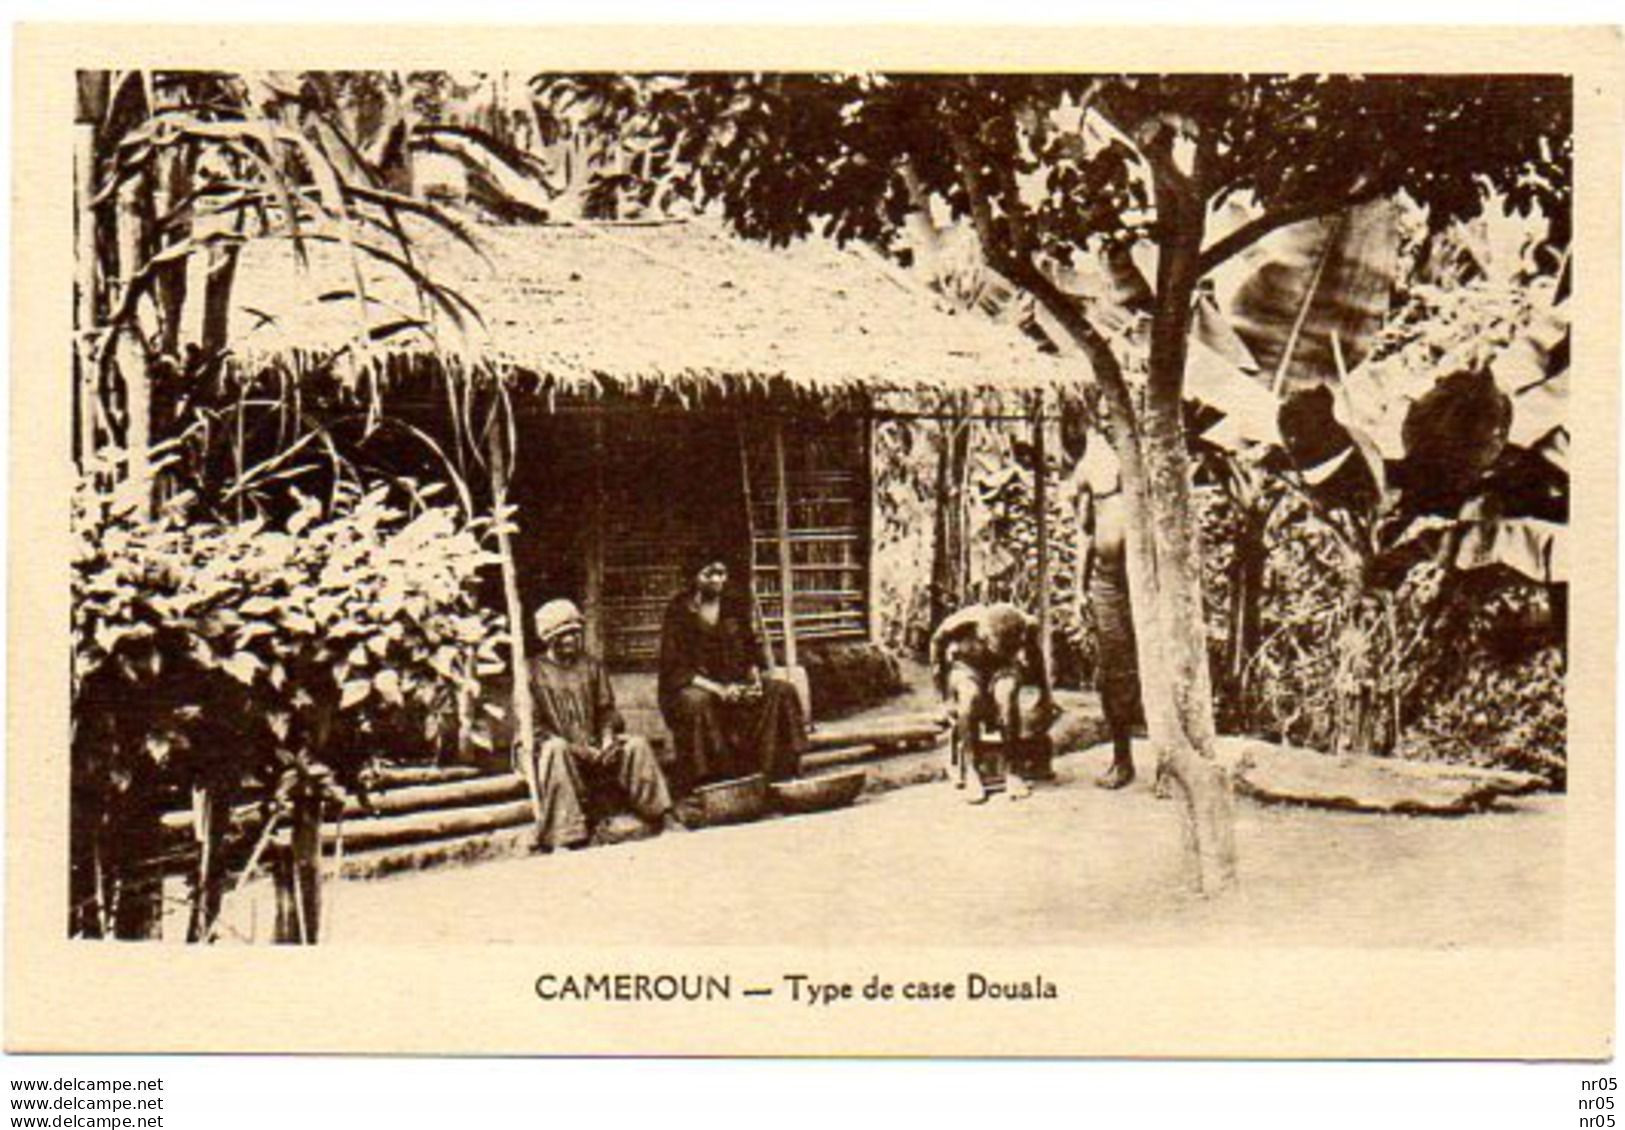 CAMEROUN ( Afrique Noire ) - Type De Case Douala - Cameroun